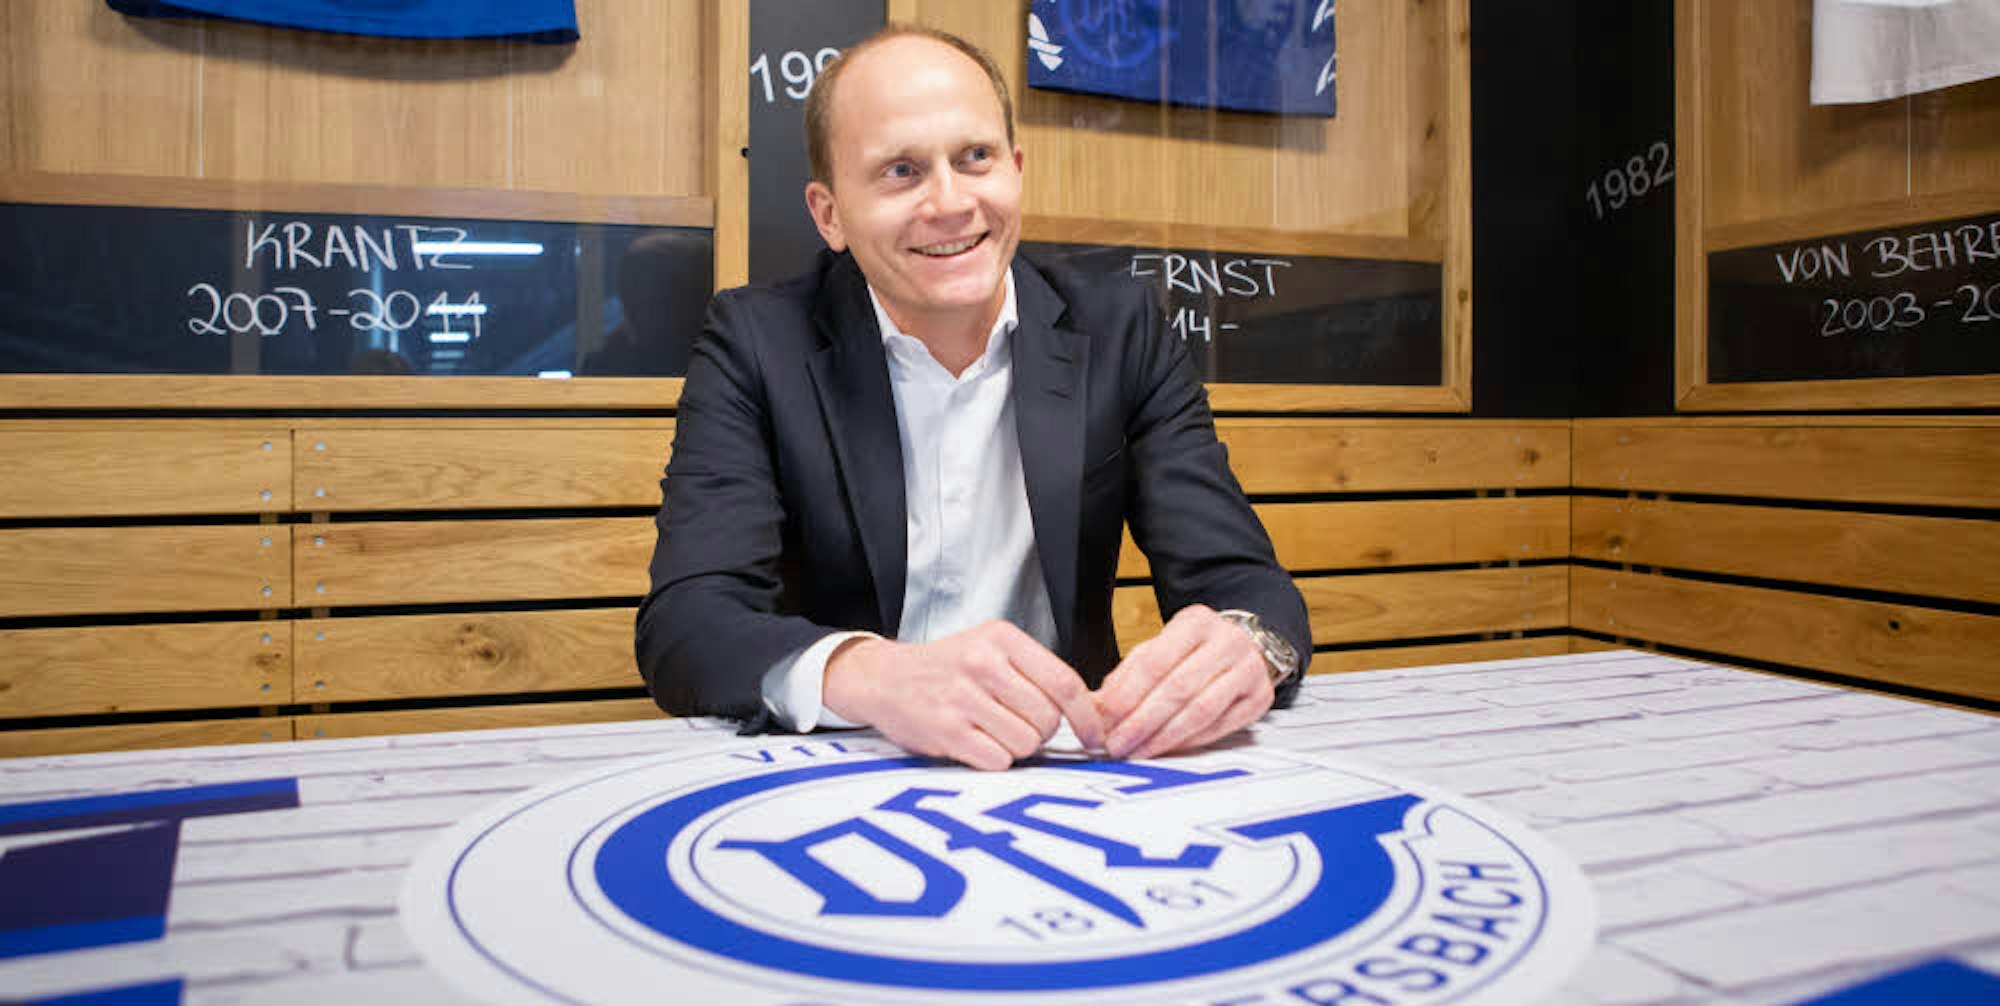 „Man muss sich an jedem kleinen Puzzlestück freuen“, sagt Hendrik Haas, der neue Vorsitzende des VfL-Beirats.